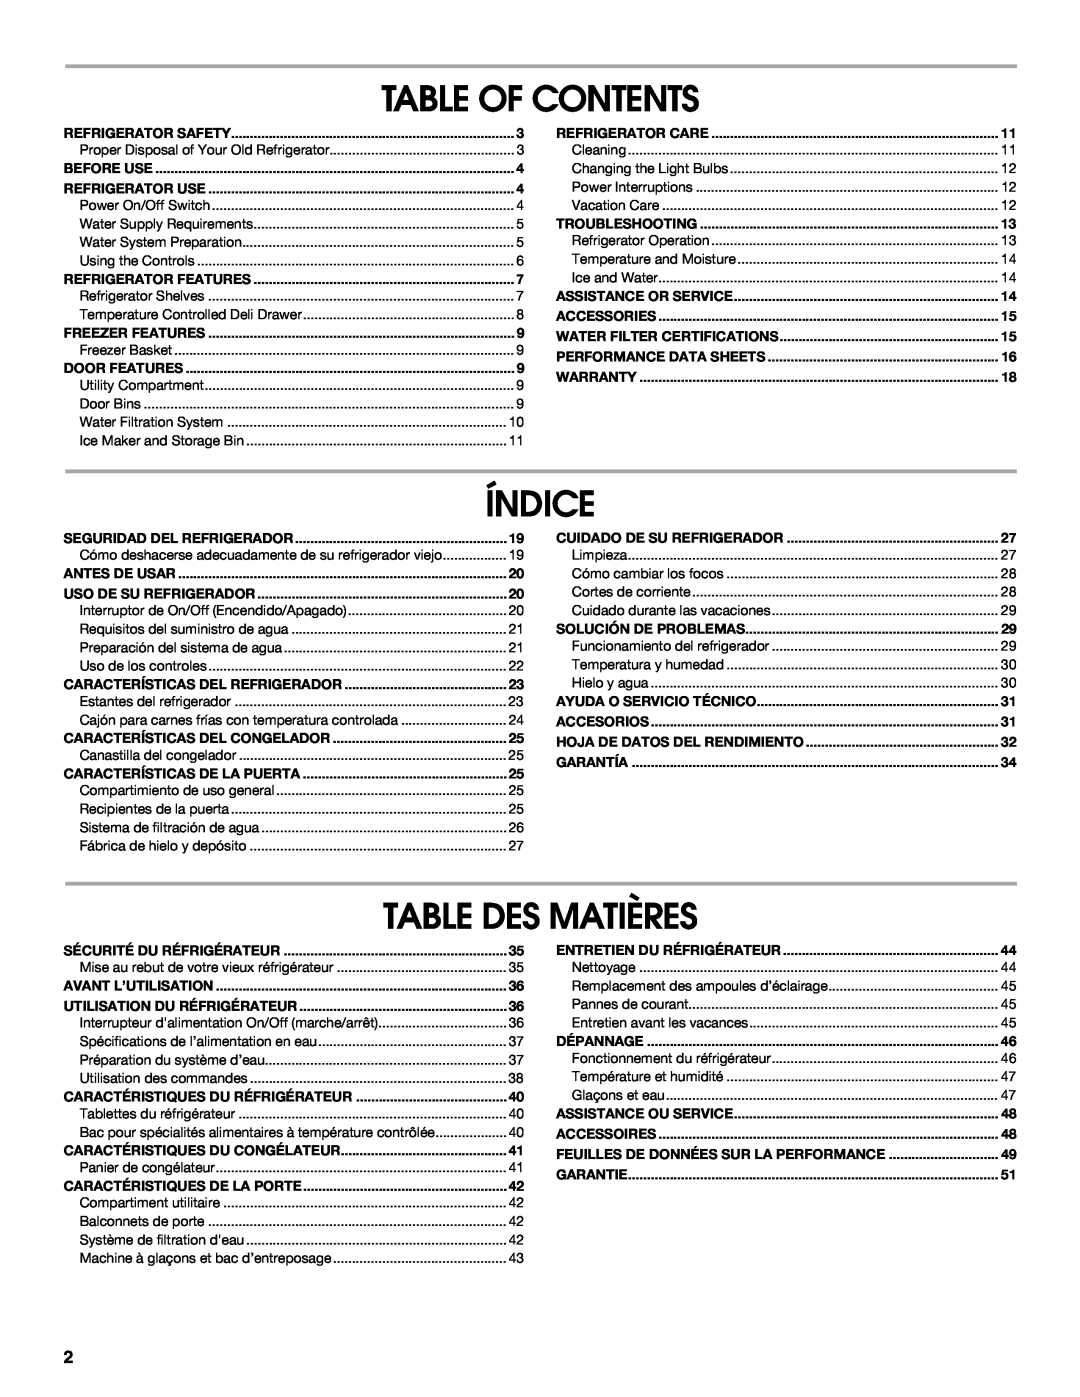 Jenn-Air W10231365B manual Table Of Contents, Índice, Table Des Matières, Caractéristiques Du Réfrigérateur 